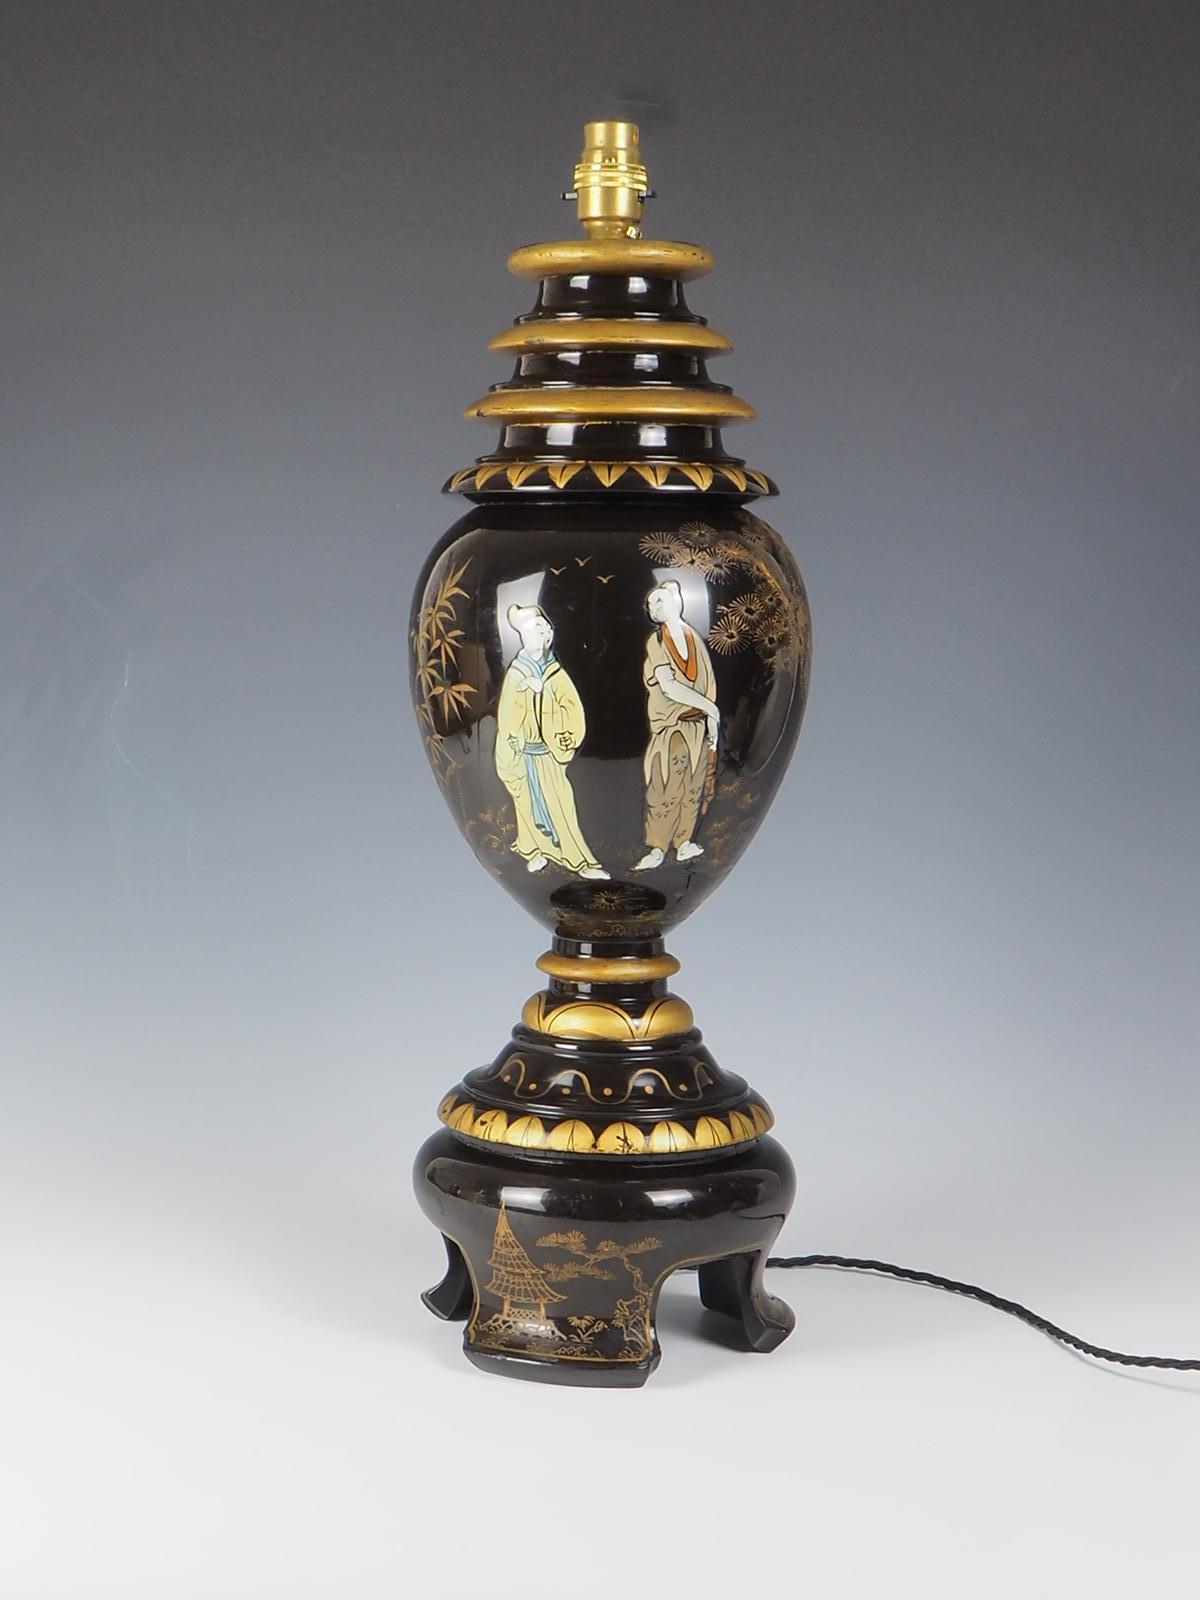 Elegant Chinoiserie Antique Table Lamp. Cette lampe exquise présente un mélange parfait d'élégance intemporelle et de design Chinoiserie complexe. Fabriqué avec une attention méticuleuse aux détails, il allie sans effort le charme à une touche de